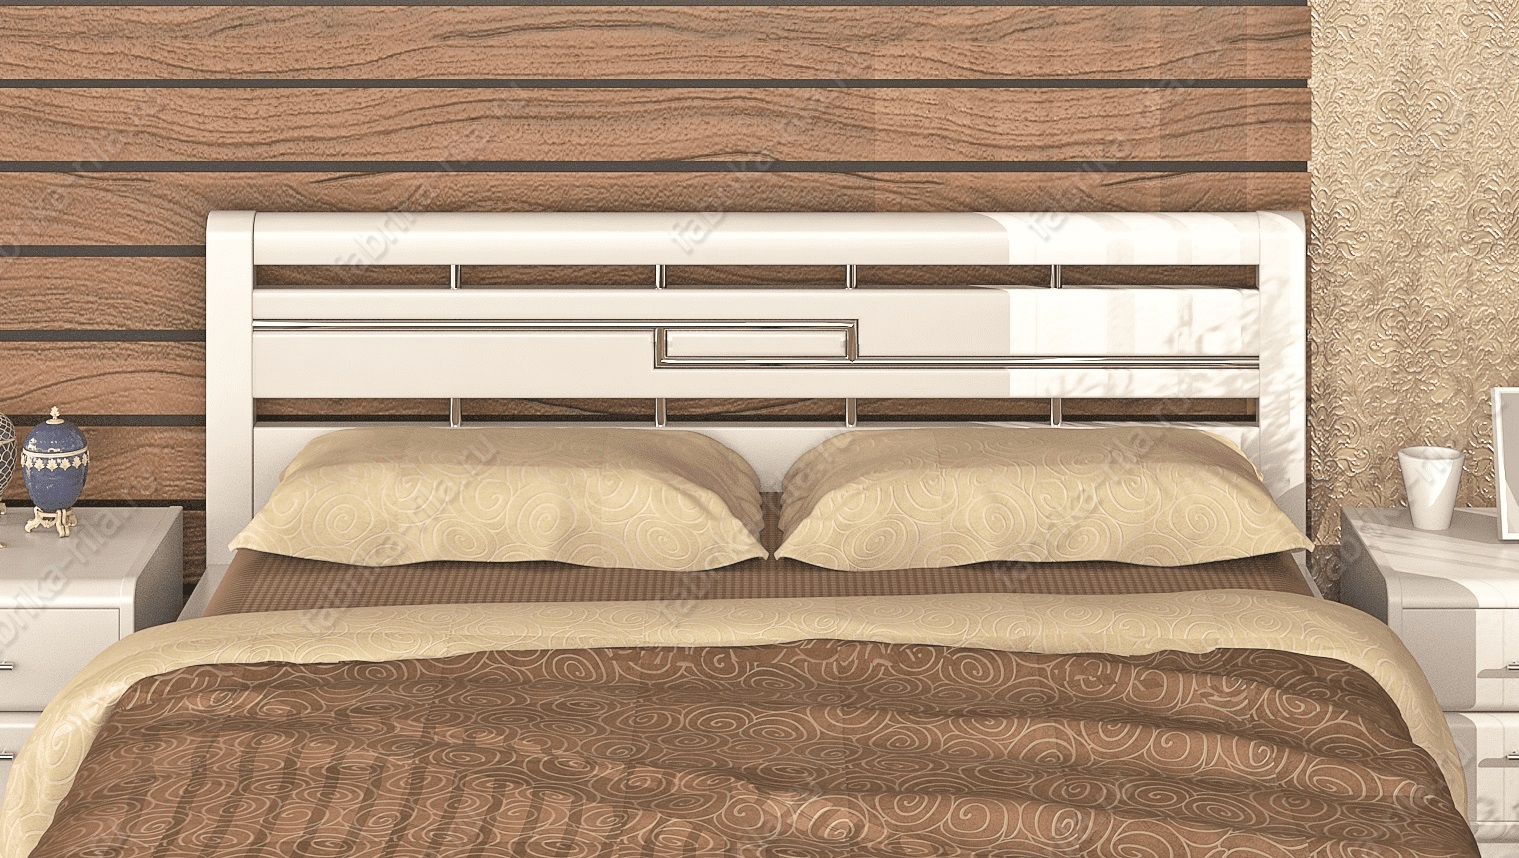 Кровать Okaeri 4 — 180x190 см. из сосны